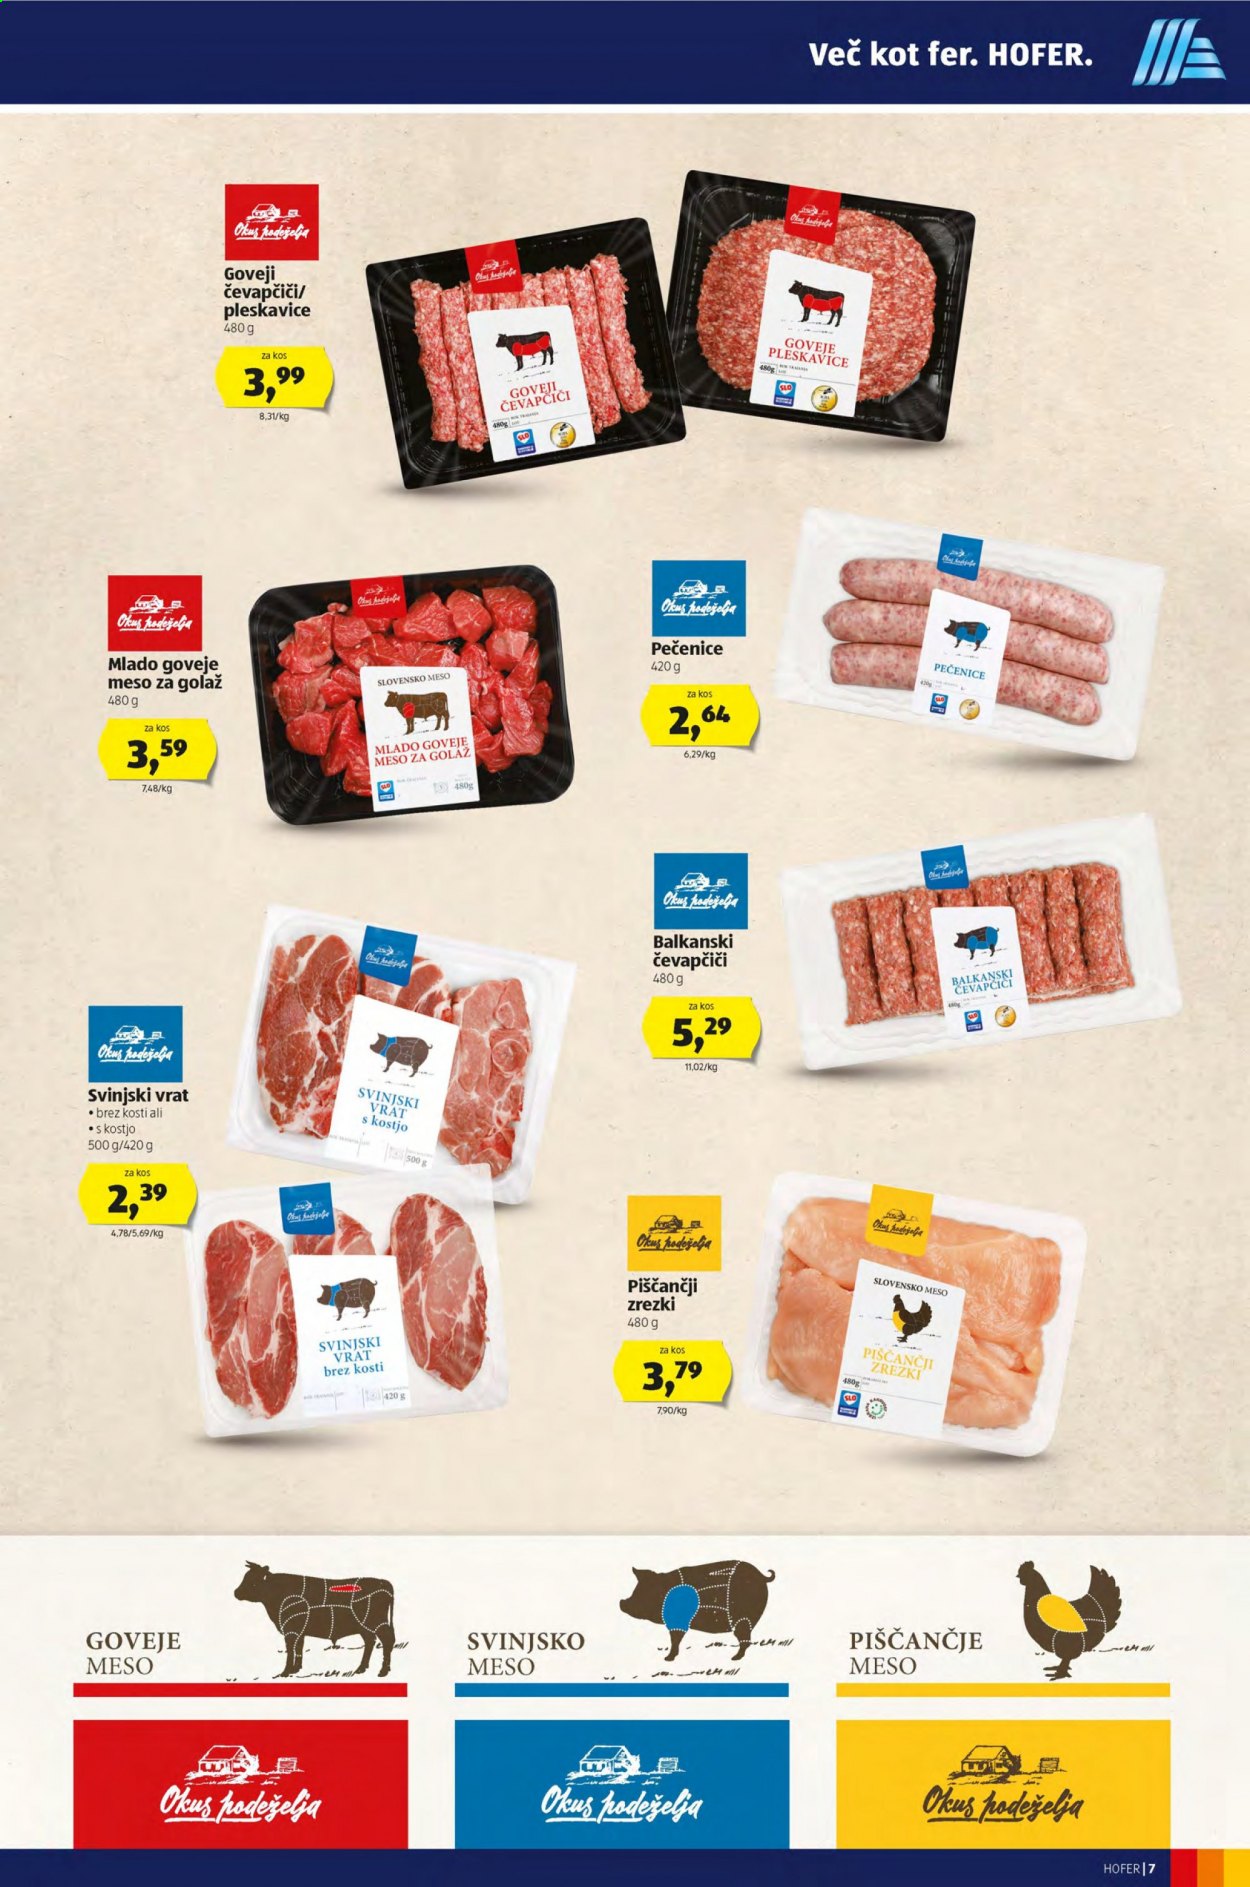 thumbnail - Hofer katalog - 19.2.2021 - 27.2.2021 - Ponudba izdelkov - piščančje meso, goveje meso, mlado goveje meso, goveje meso za golaž, čevapčiči, pleskavice, svinjski vrat, svinjski vrat s kostjo, svinjsko meso. Stran 7.